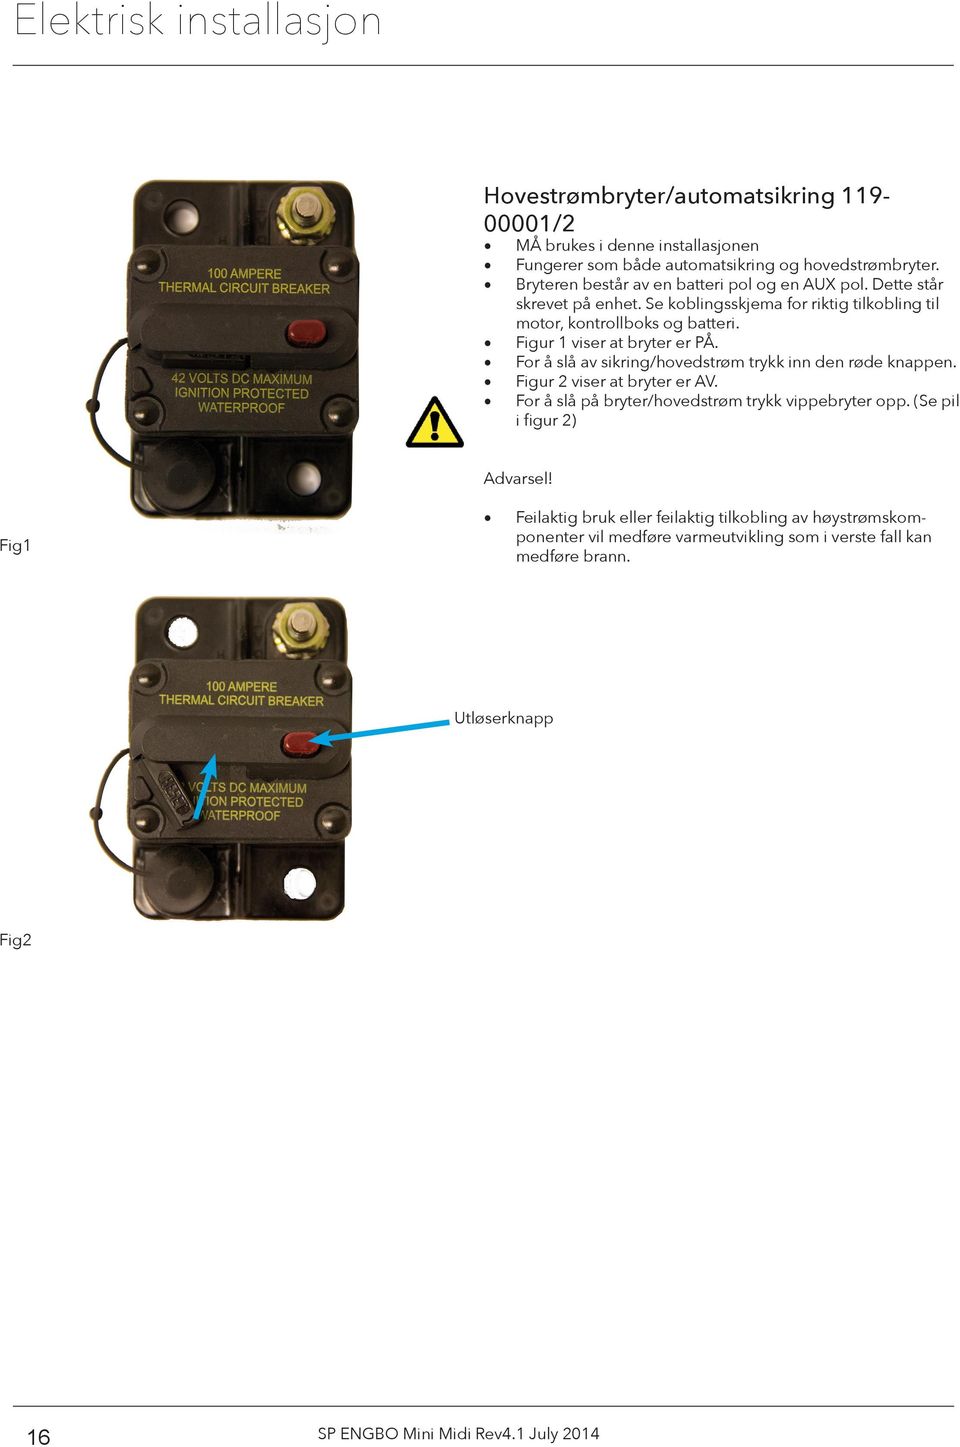 Figur 1 viser at bryter er PÅ. For å slå av sikring/hovedstrøm trykk inn den røde knappen. Figur 2 viser at bryter er AV.